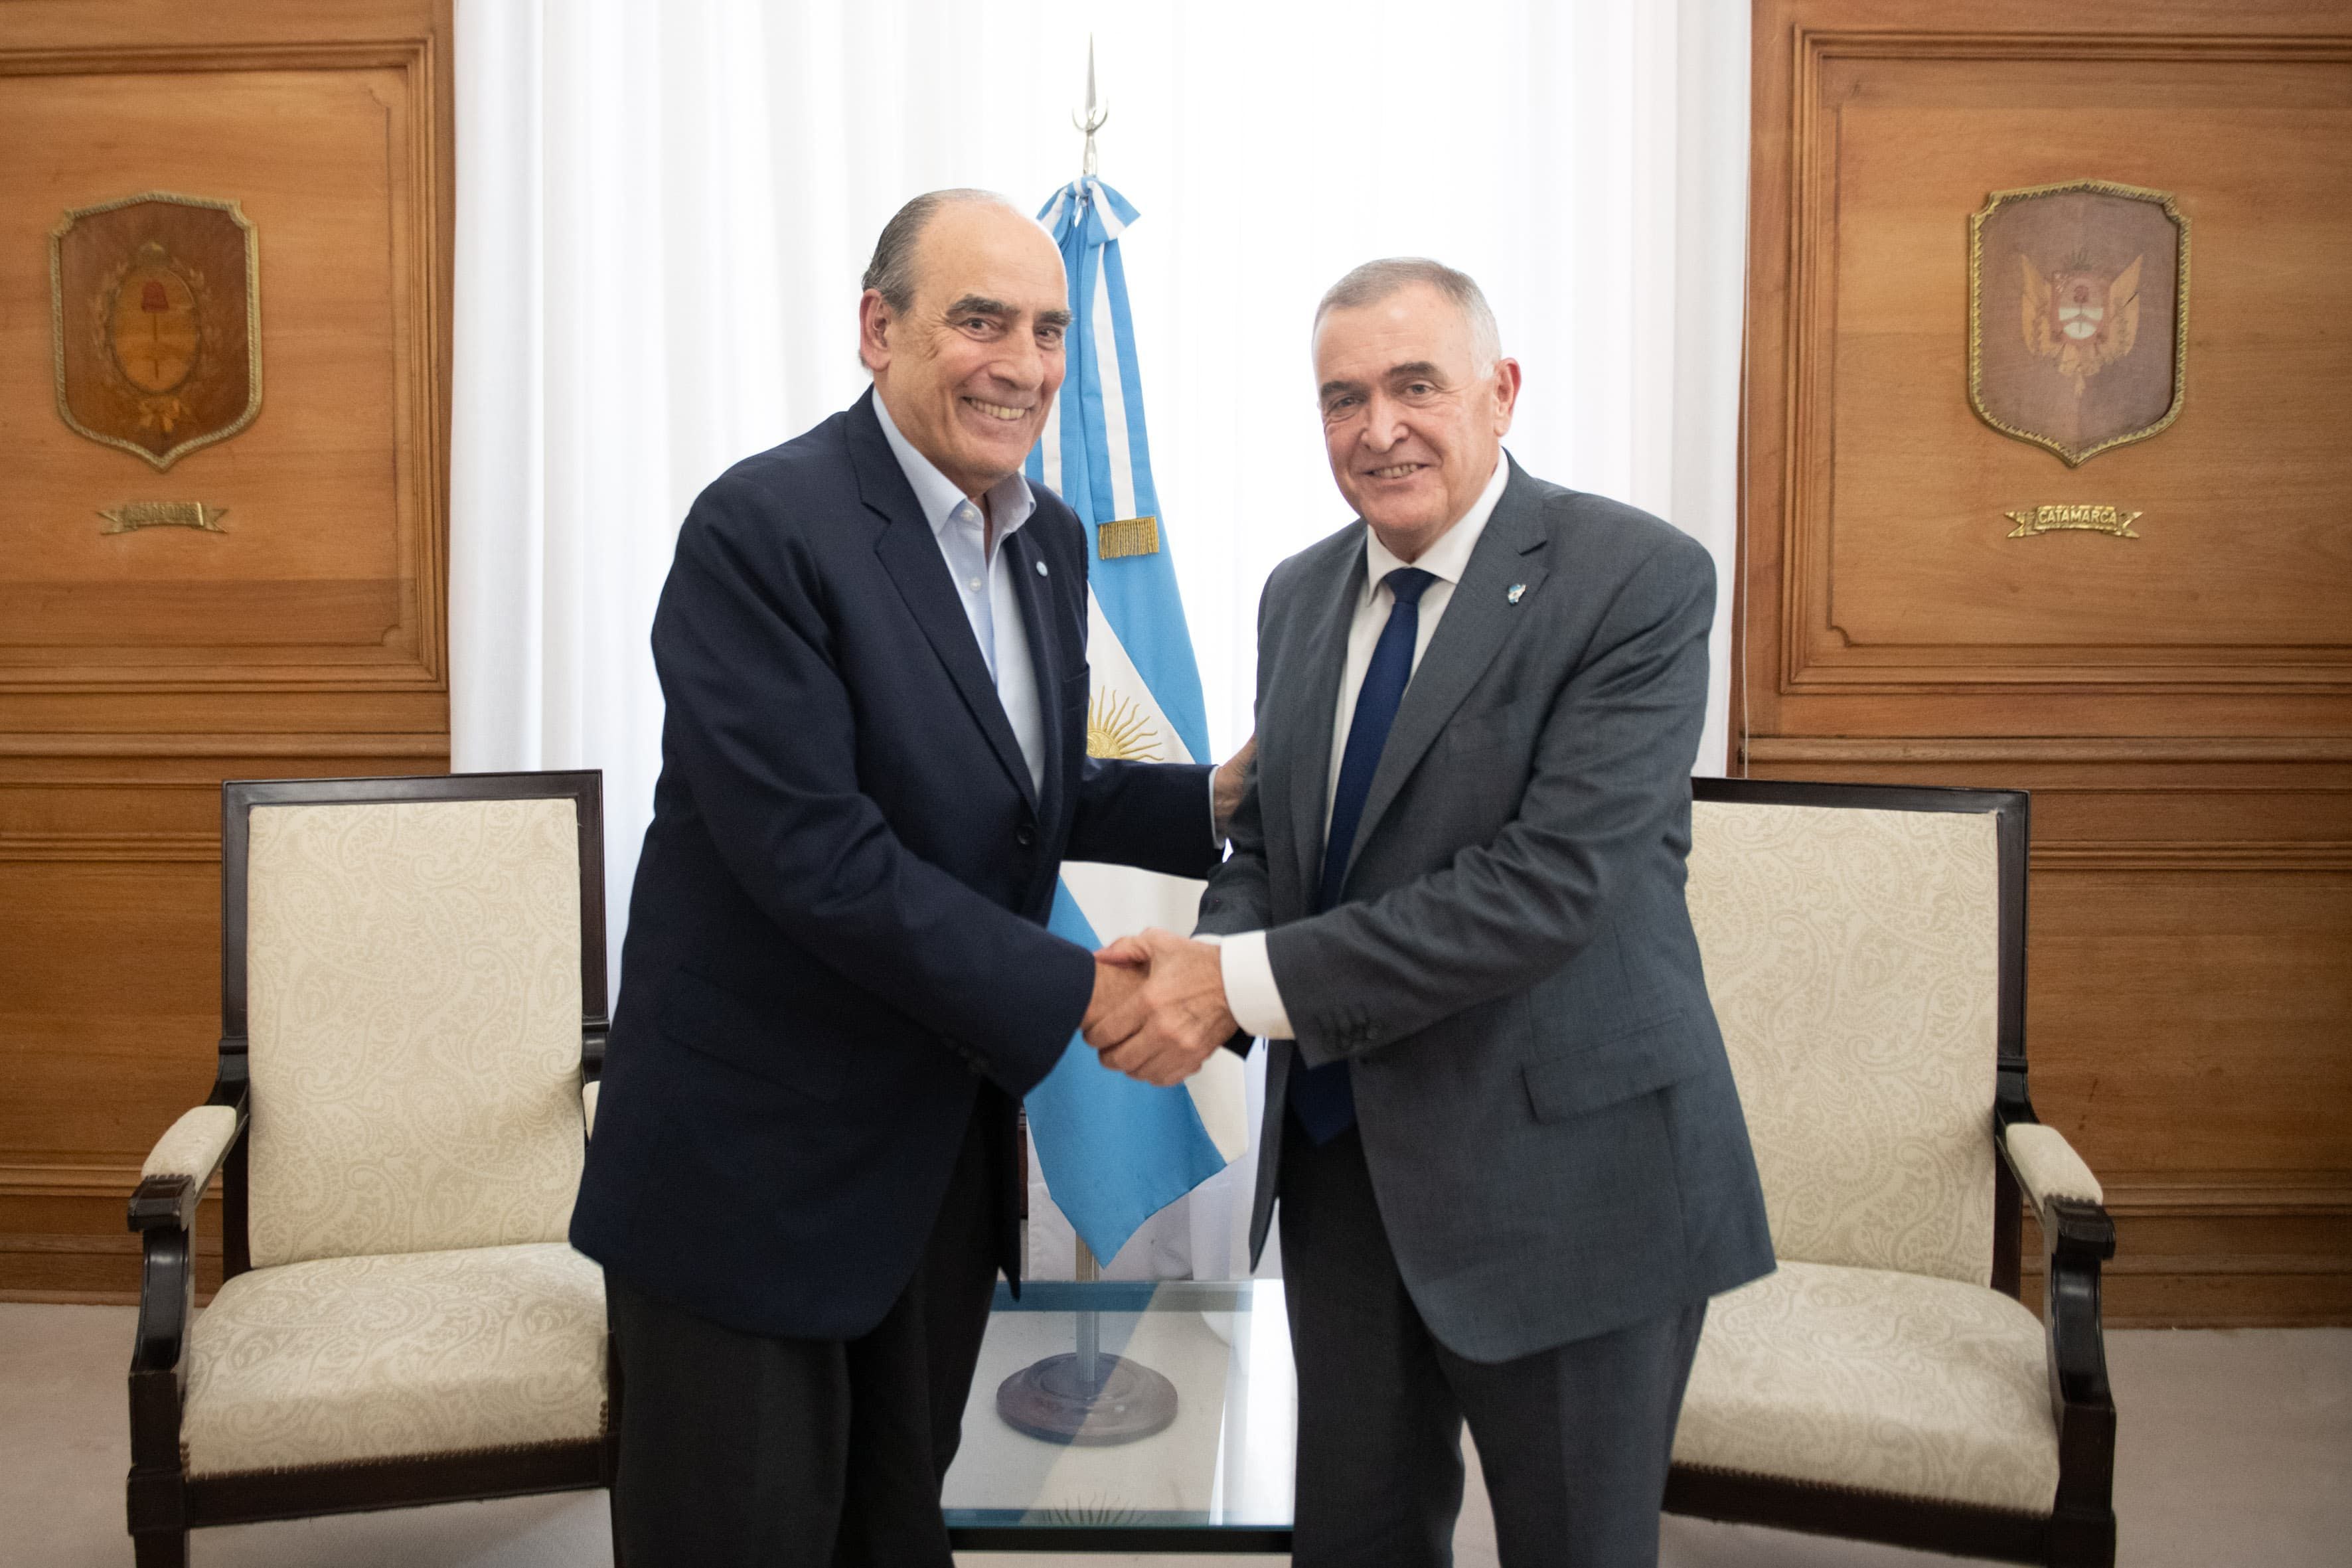 El gobernador de Tucumán, Osvaldo Jaldo, junto al ministro del Interior, Guillermo Francos